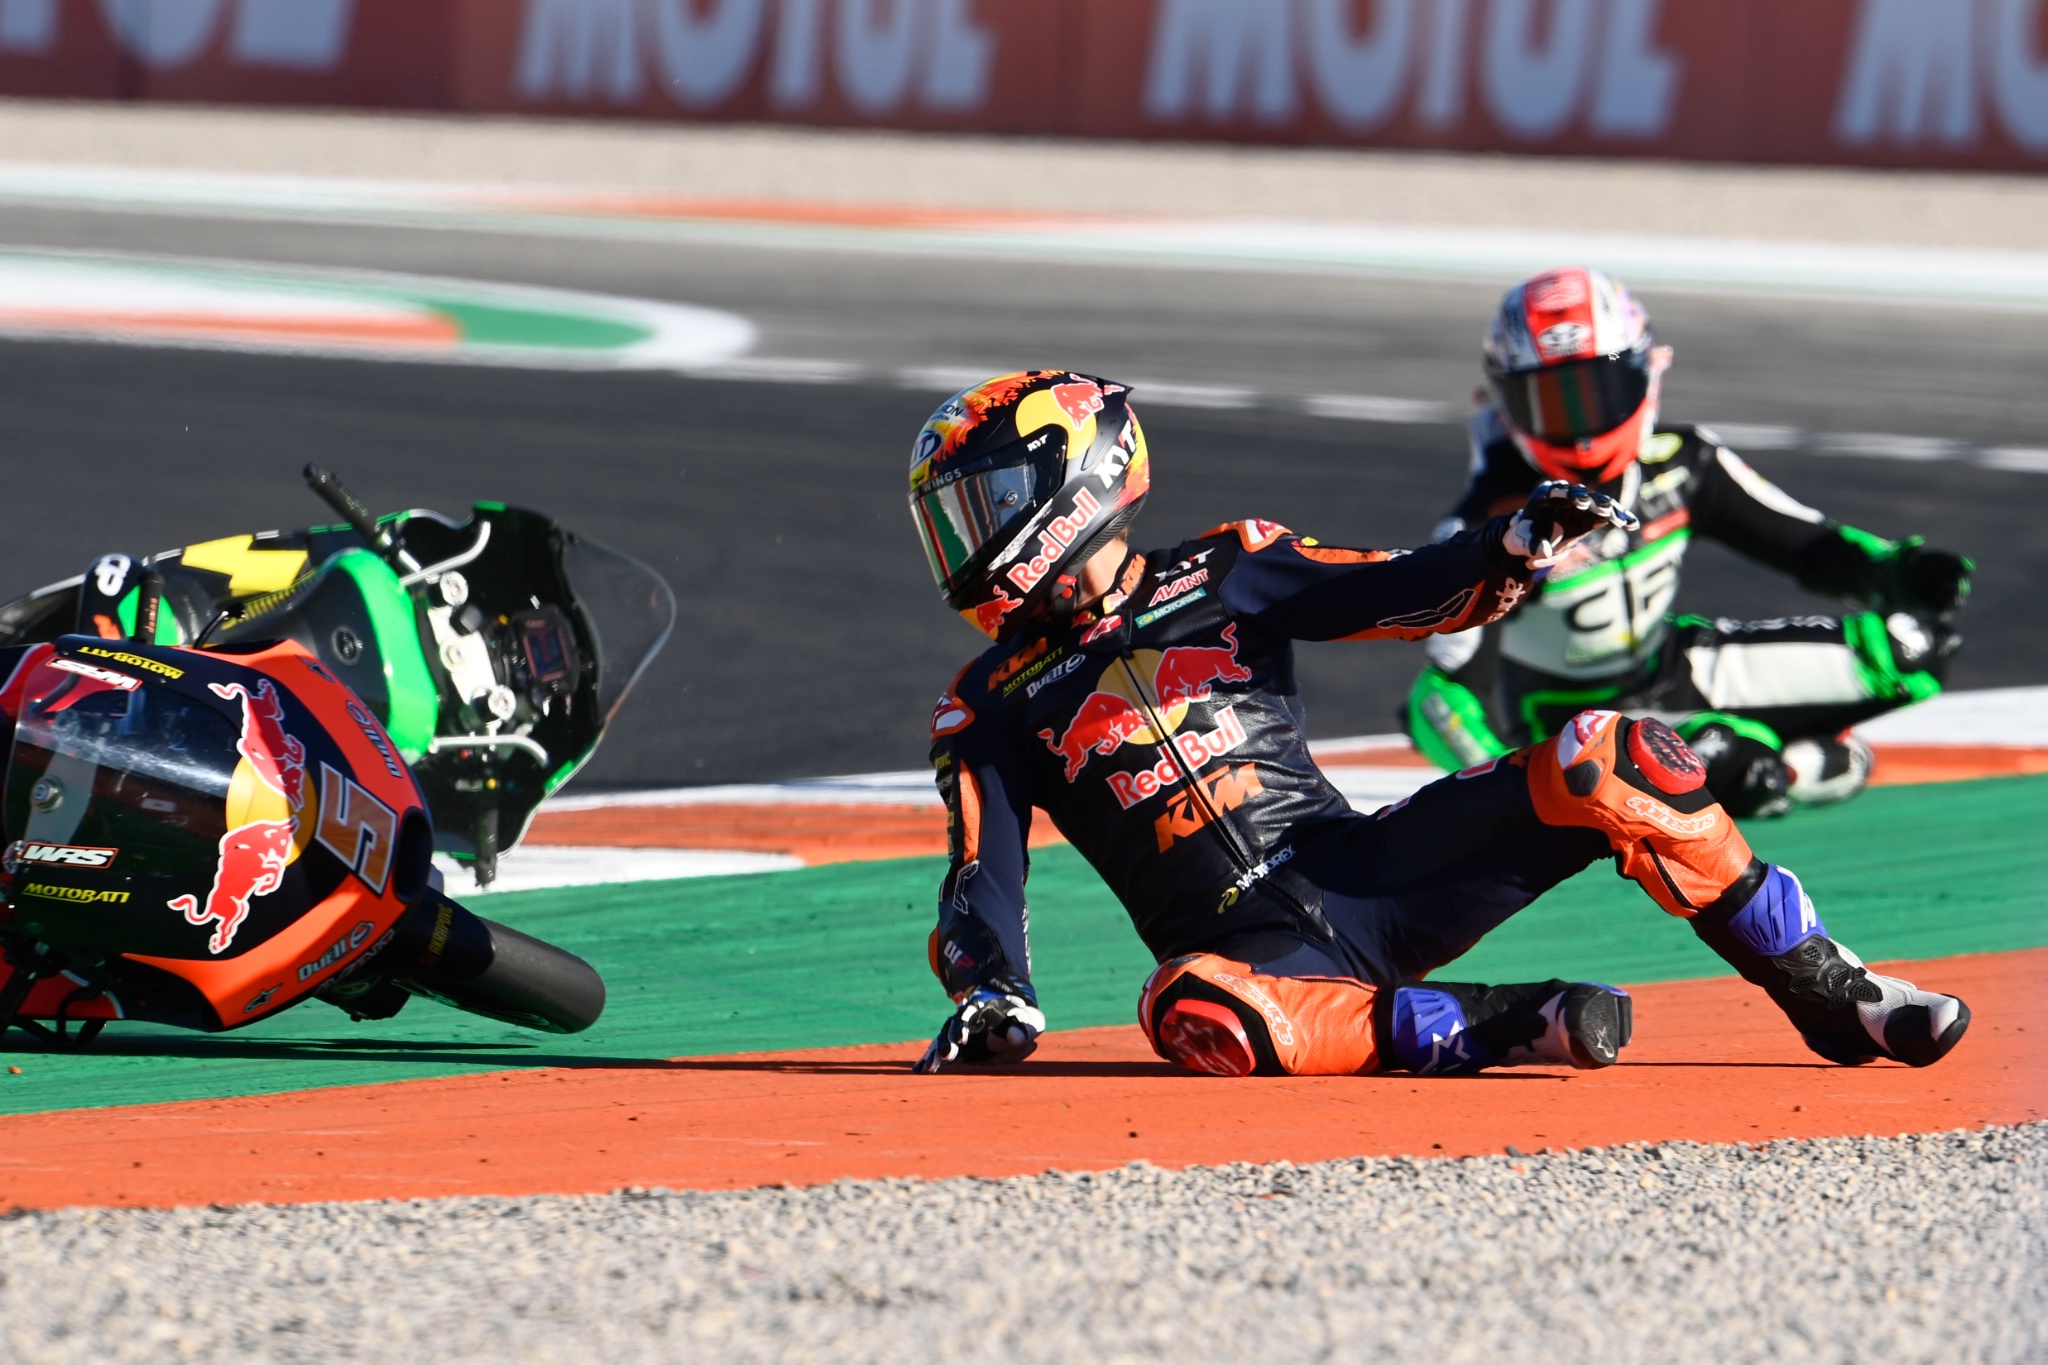 Jaume Masia crash, Moto3, Valencia MotoGP, 5 November